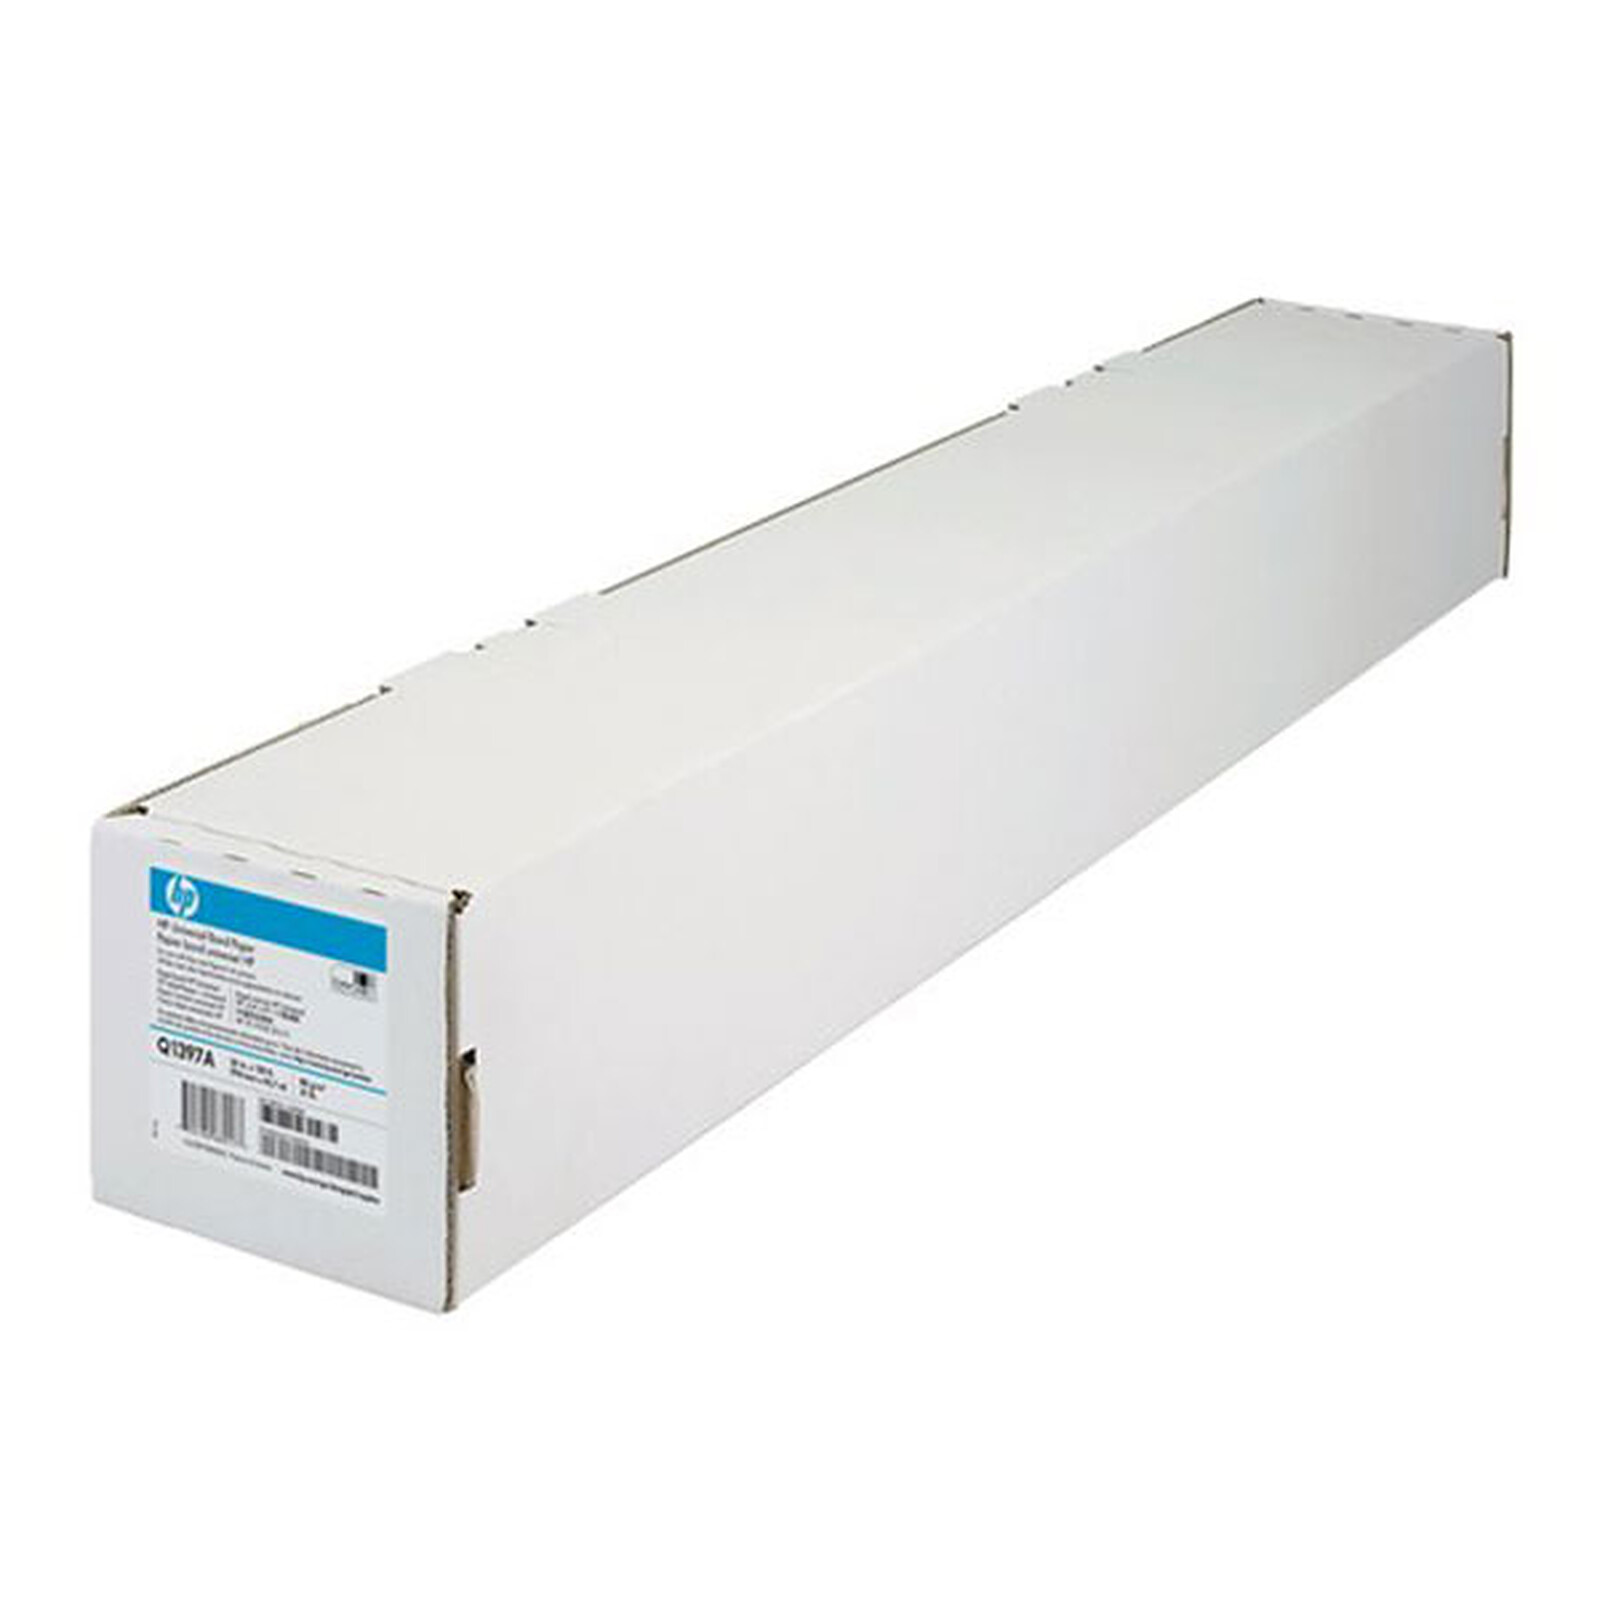 DYMO LW rouleau d'étiquettes universelles permanentes blanches - 25 x 54 mm  - Papier imprimante - LDLC